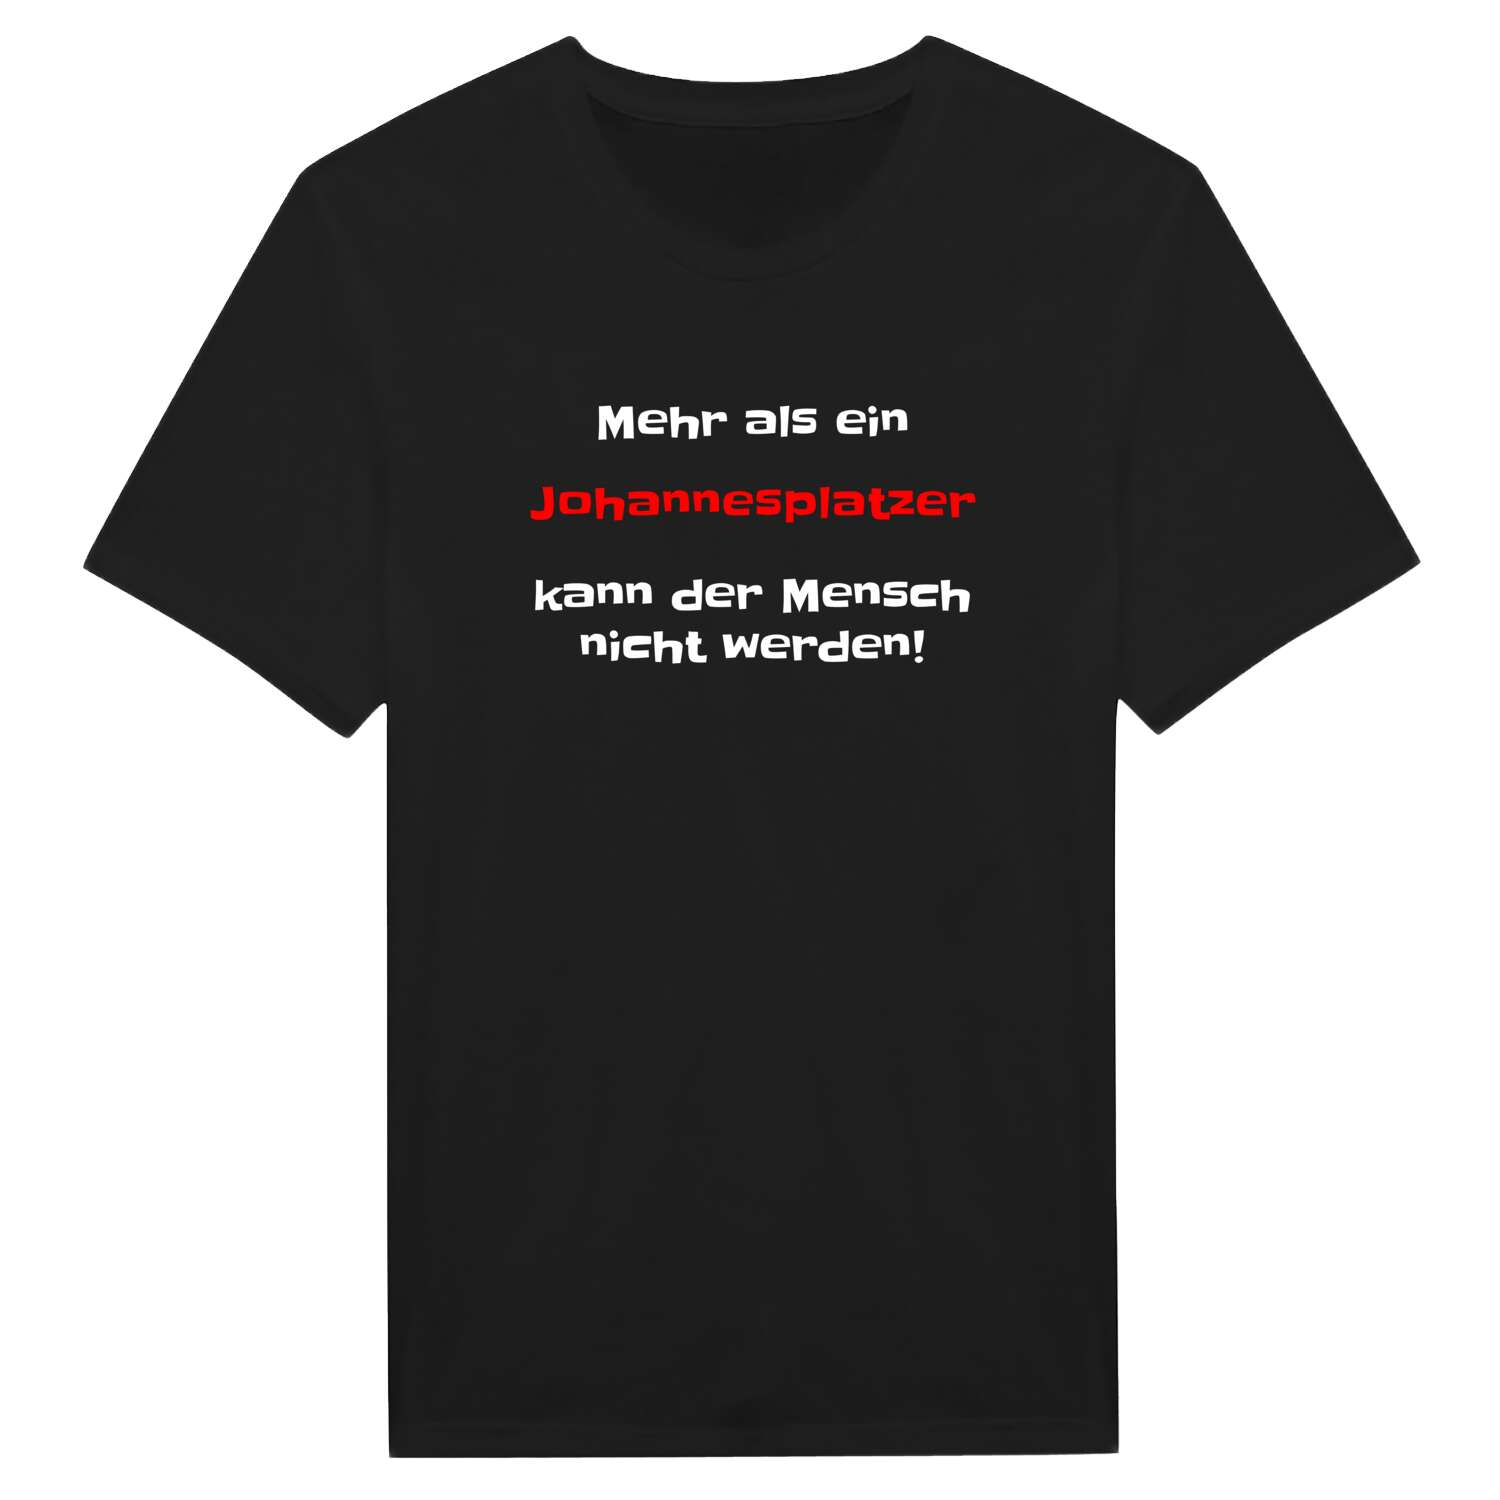 Johannesplatz T-Shirt »Mehr als ein«